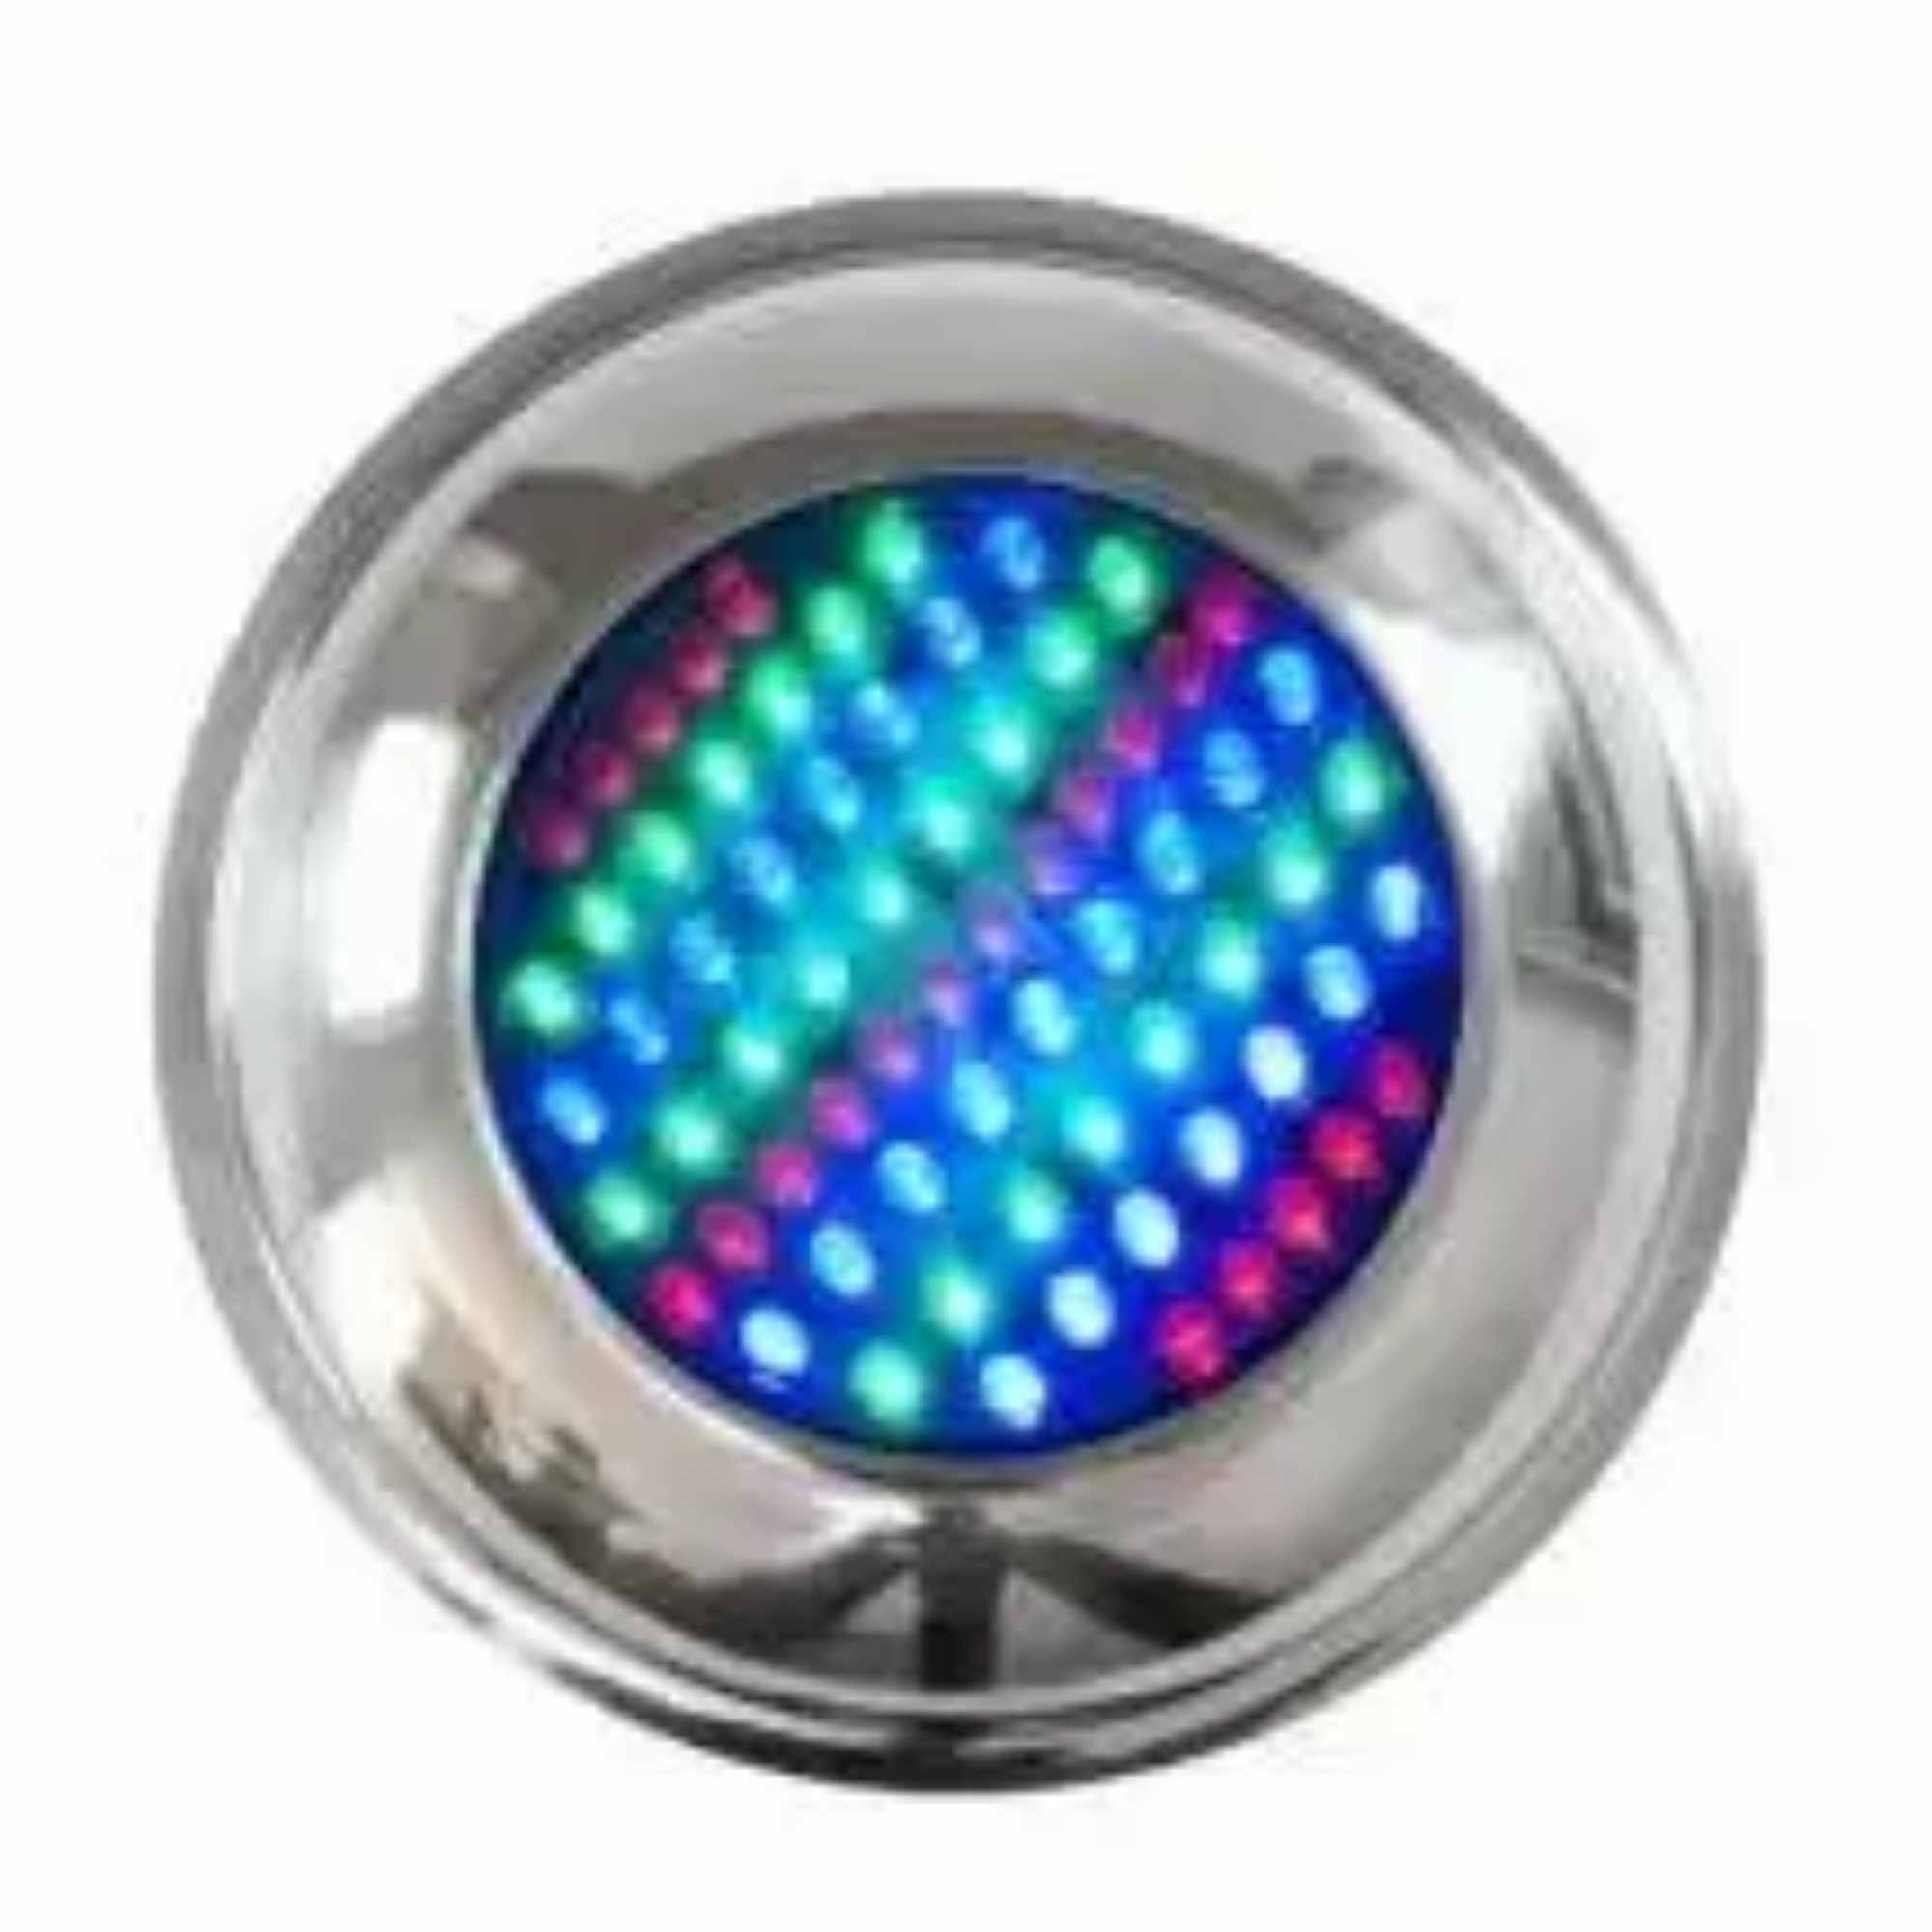 Refletor LED 70 pontos Inox Iluminação Multicolorida RGB para Piscina - Brustec  - Sol e Água Piscinas e Acessórios